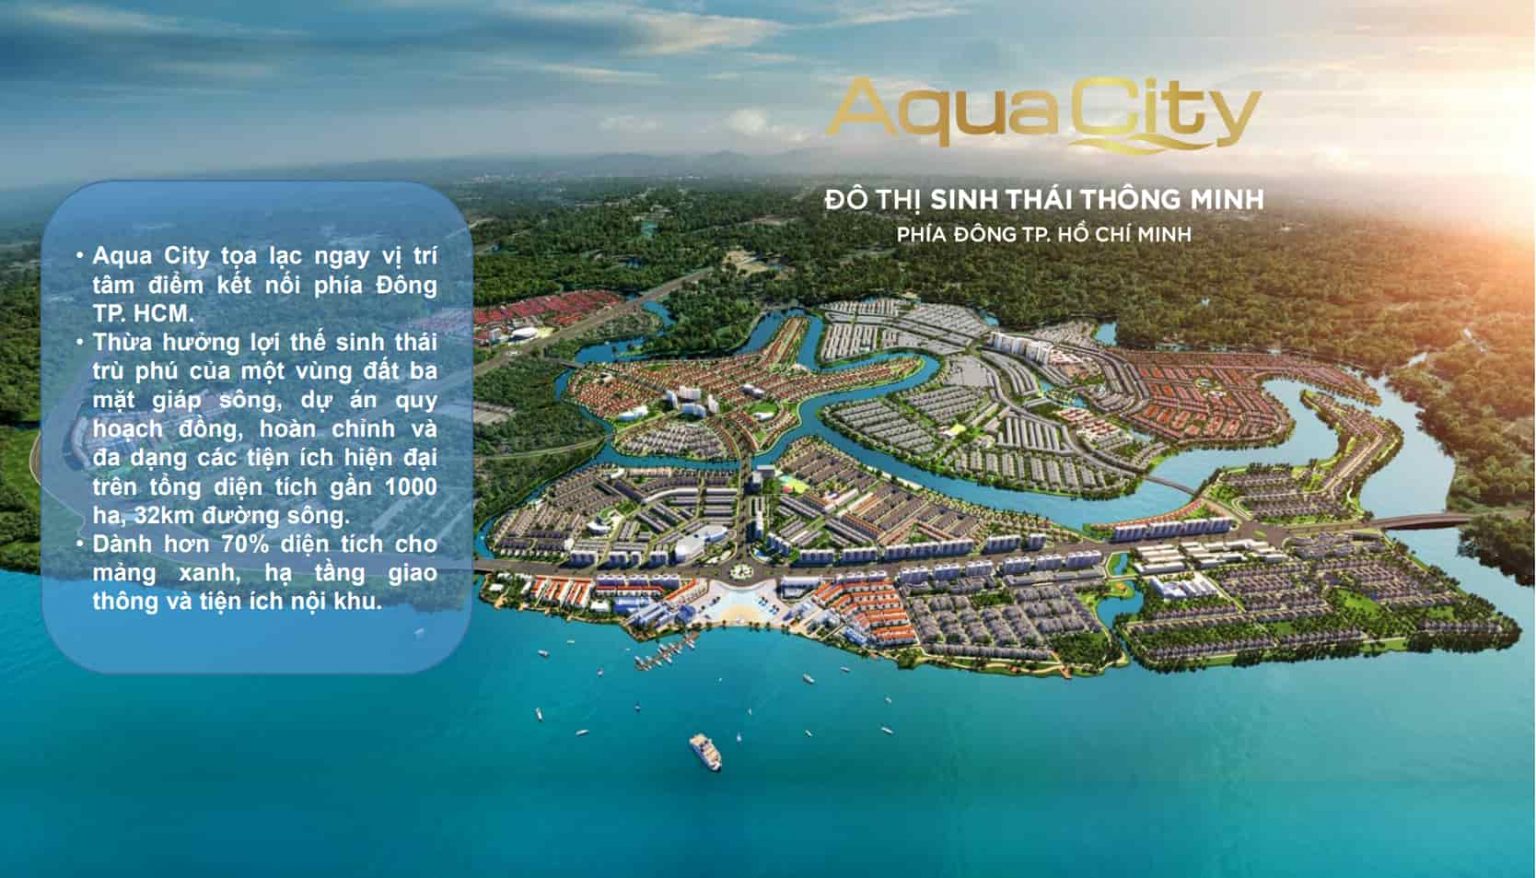 Tong Quan Du An Aqua City 1 1536x878